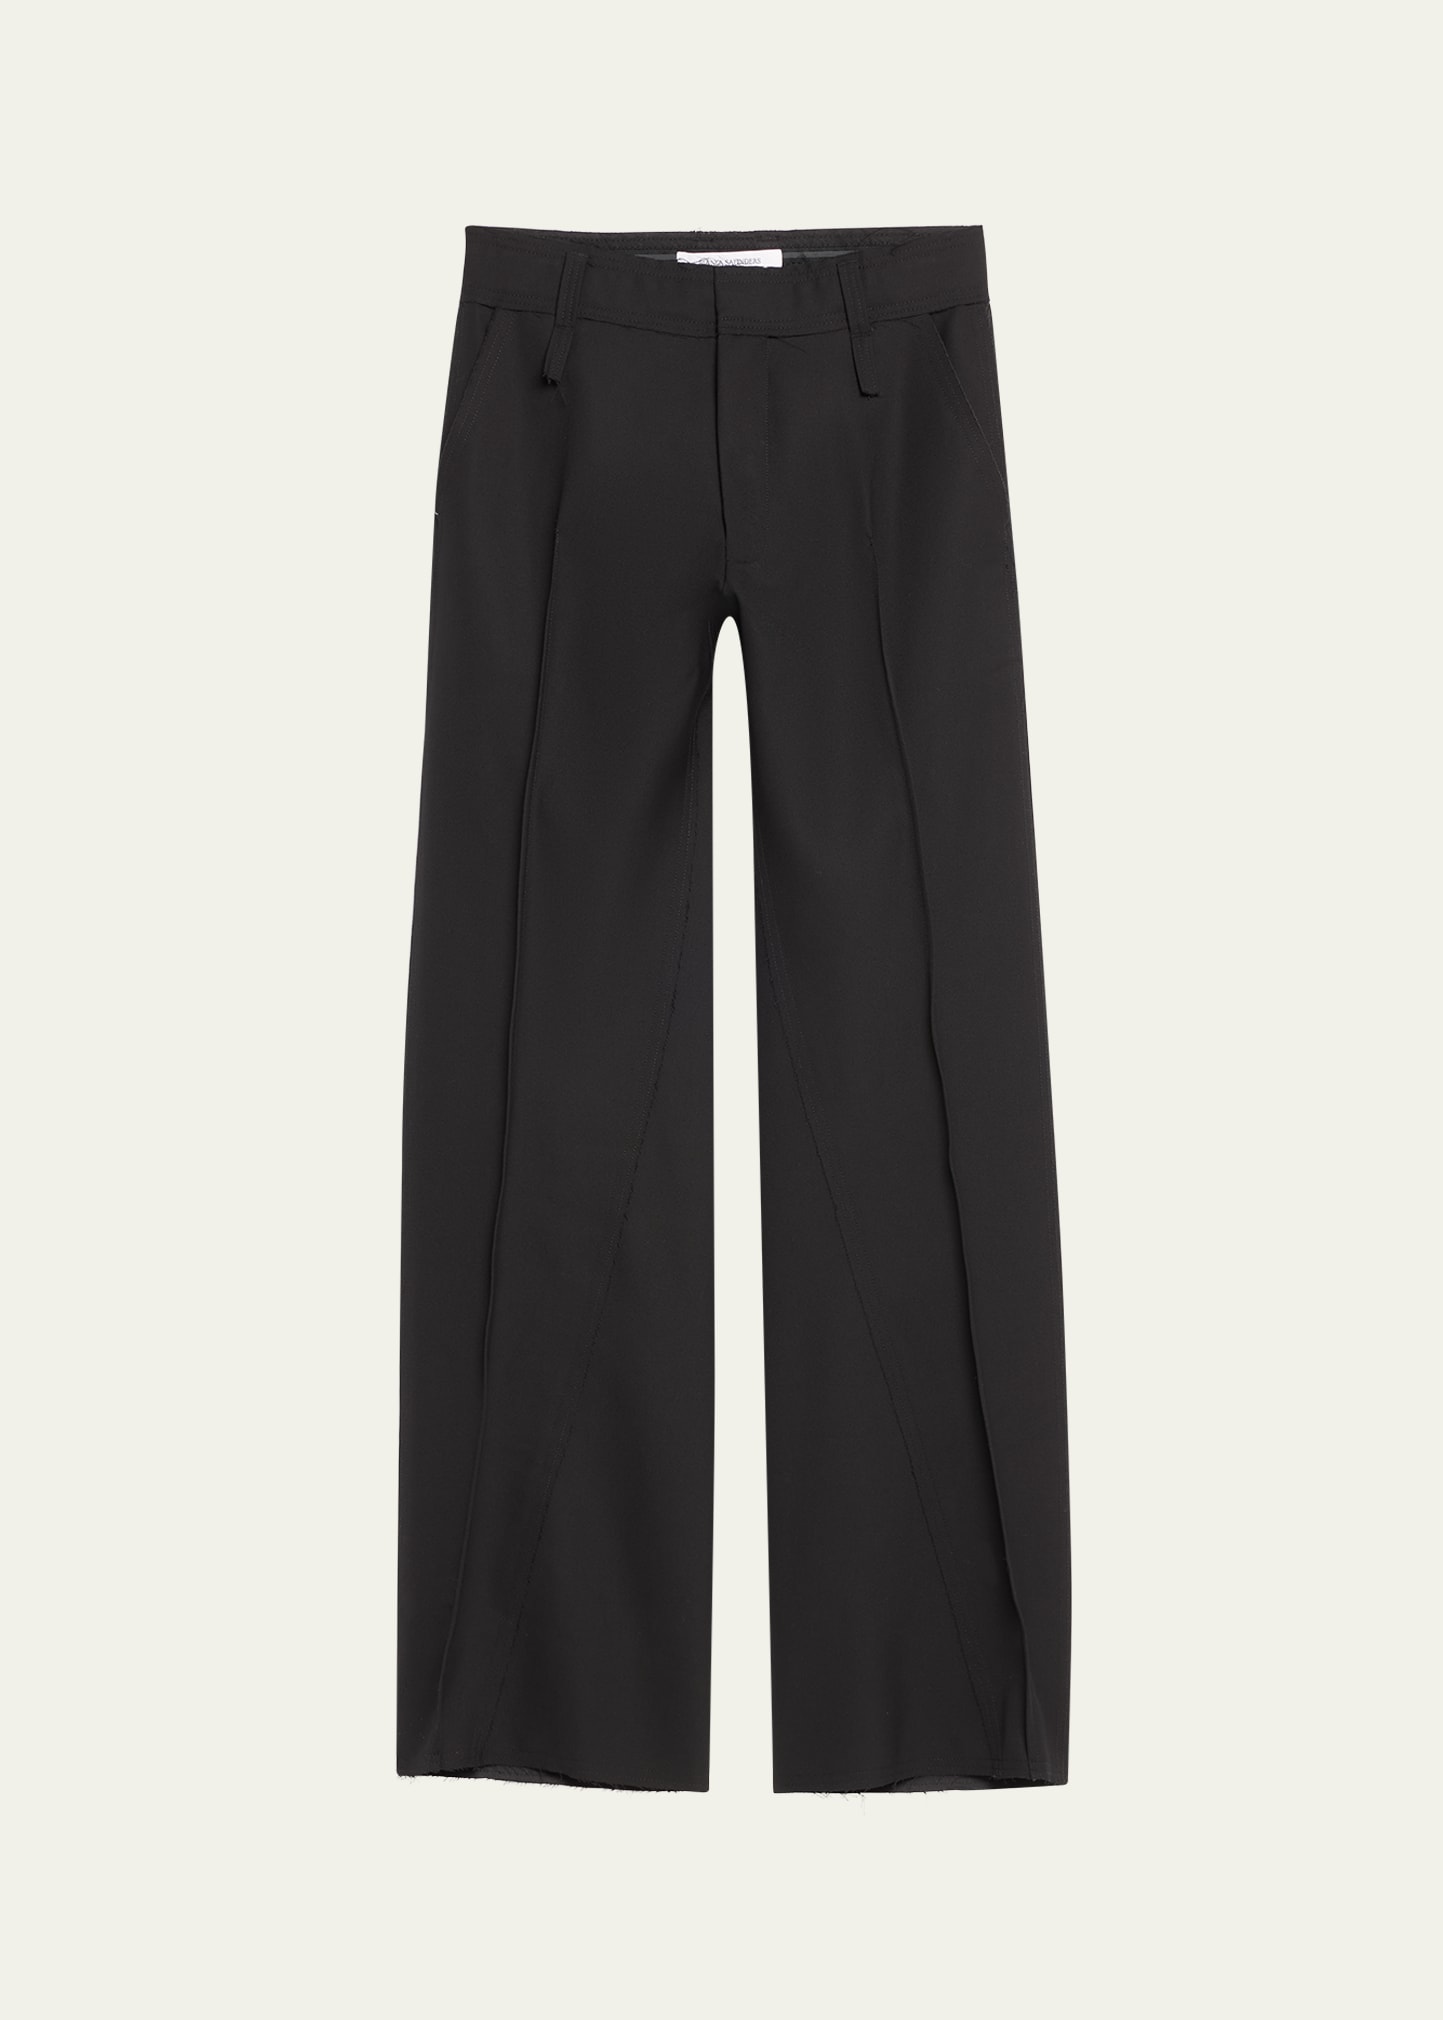 Bianca Saunders Men's Pleated Wool Trousers In Black